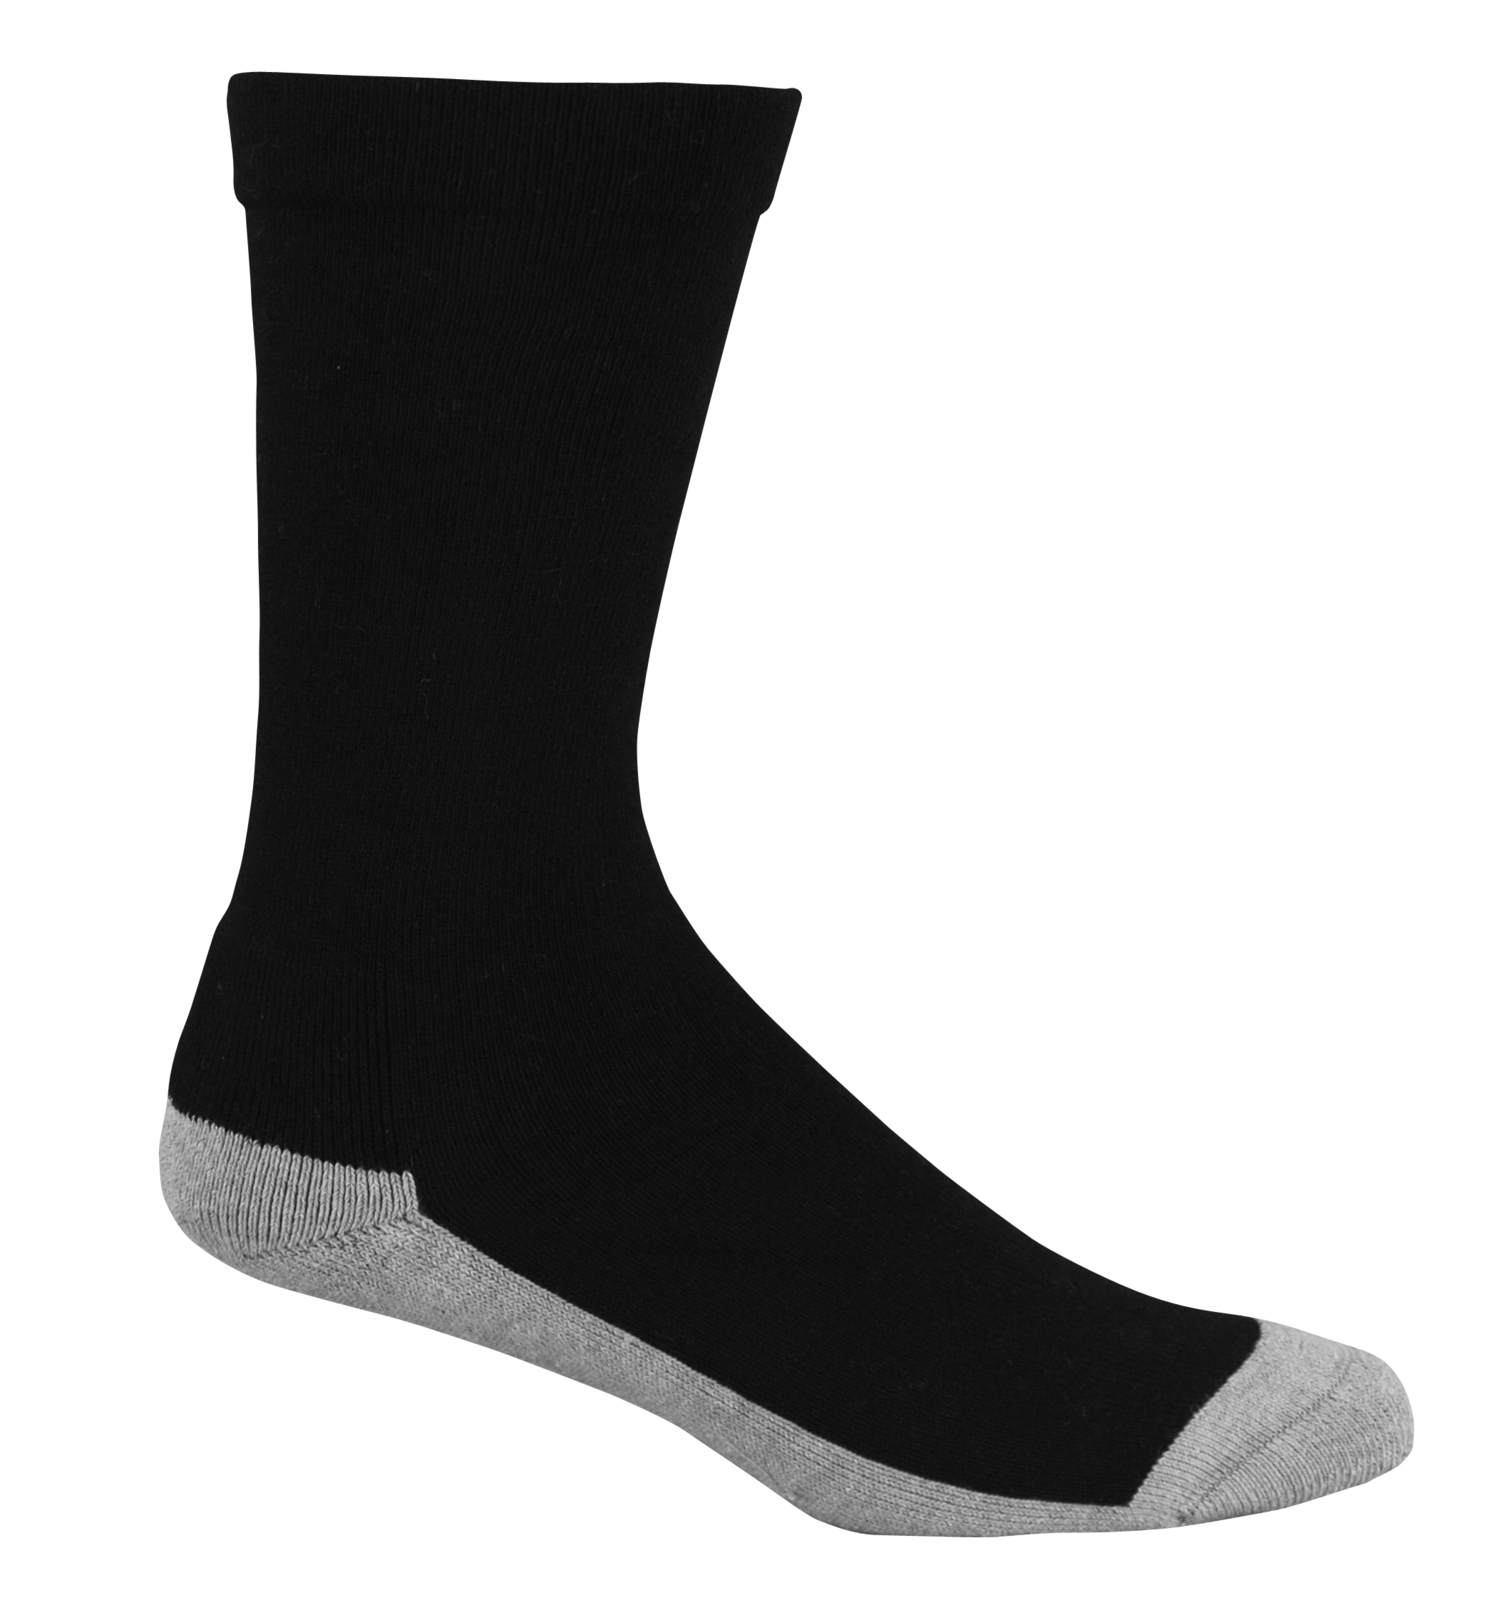 Charcoal Health Socks